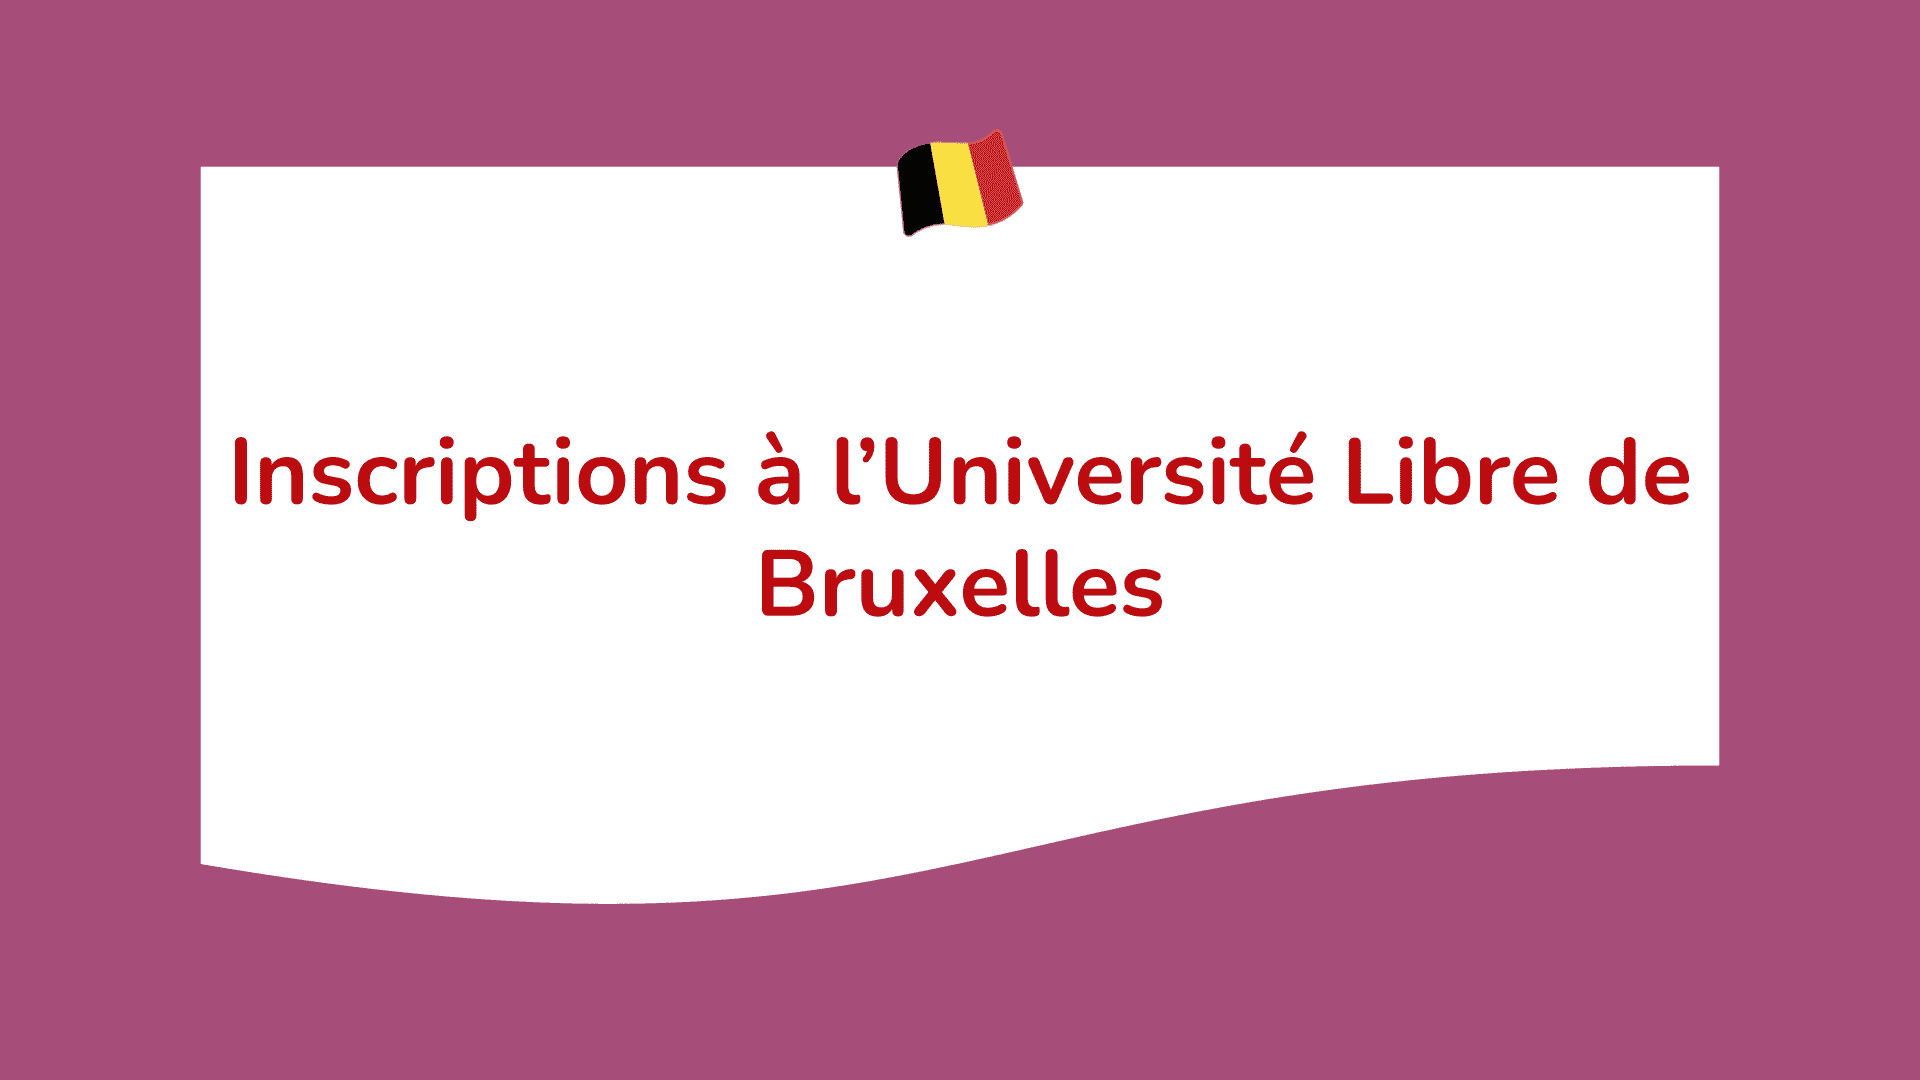 Inscriptions à l’Université Libre de Bruxelles